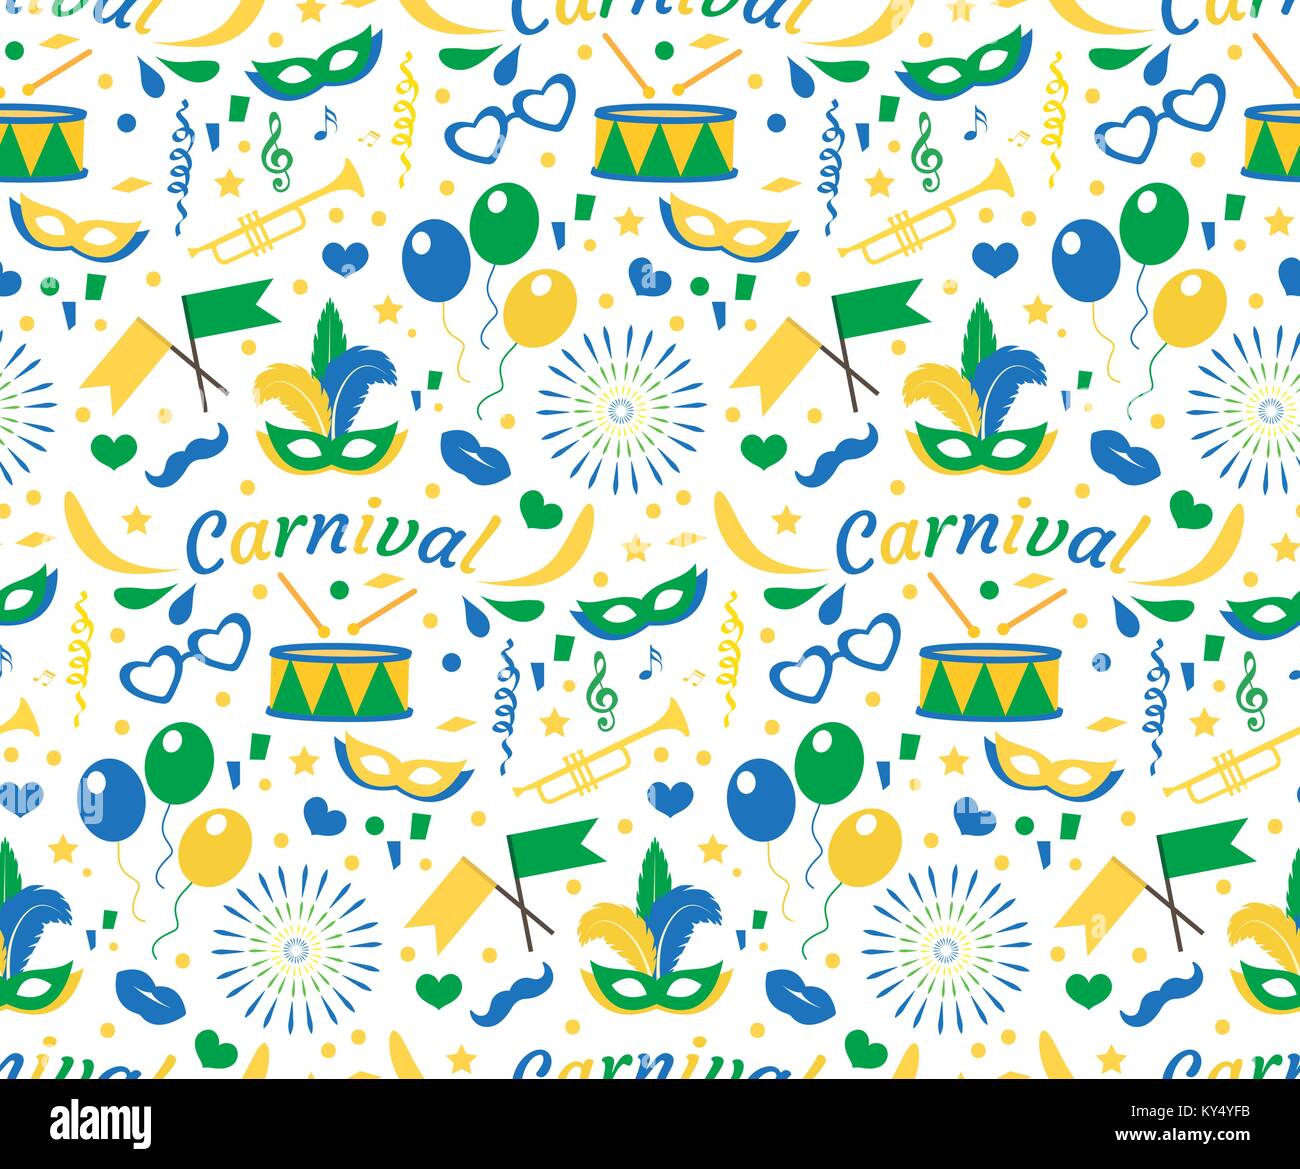 Carnaval brésilien modèle transparent avec masque des plumes, des confettis, des ballons. Le Brésil, la texture de fond sans fin, papier peint. Toile de Festival bleu, vert, jaune. Vector illustration. Illustration de Vecteur